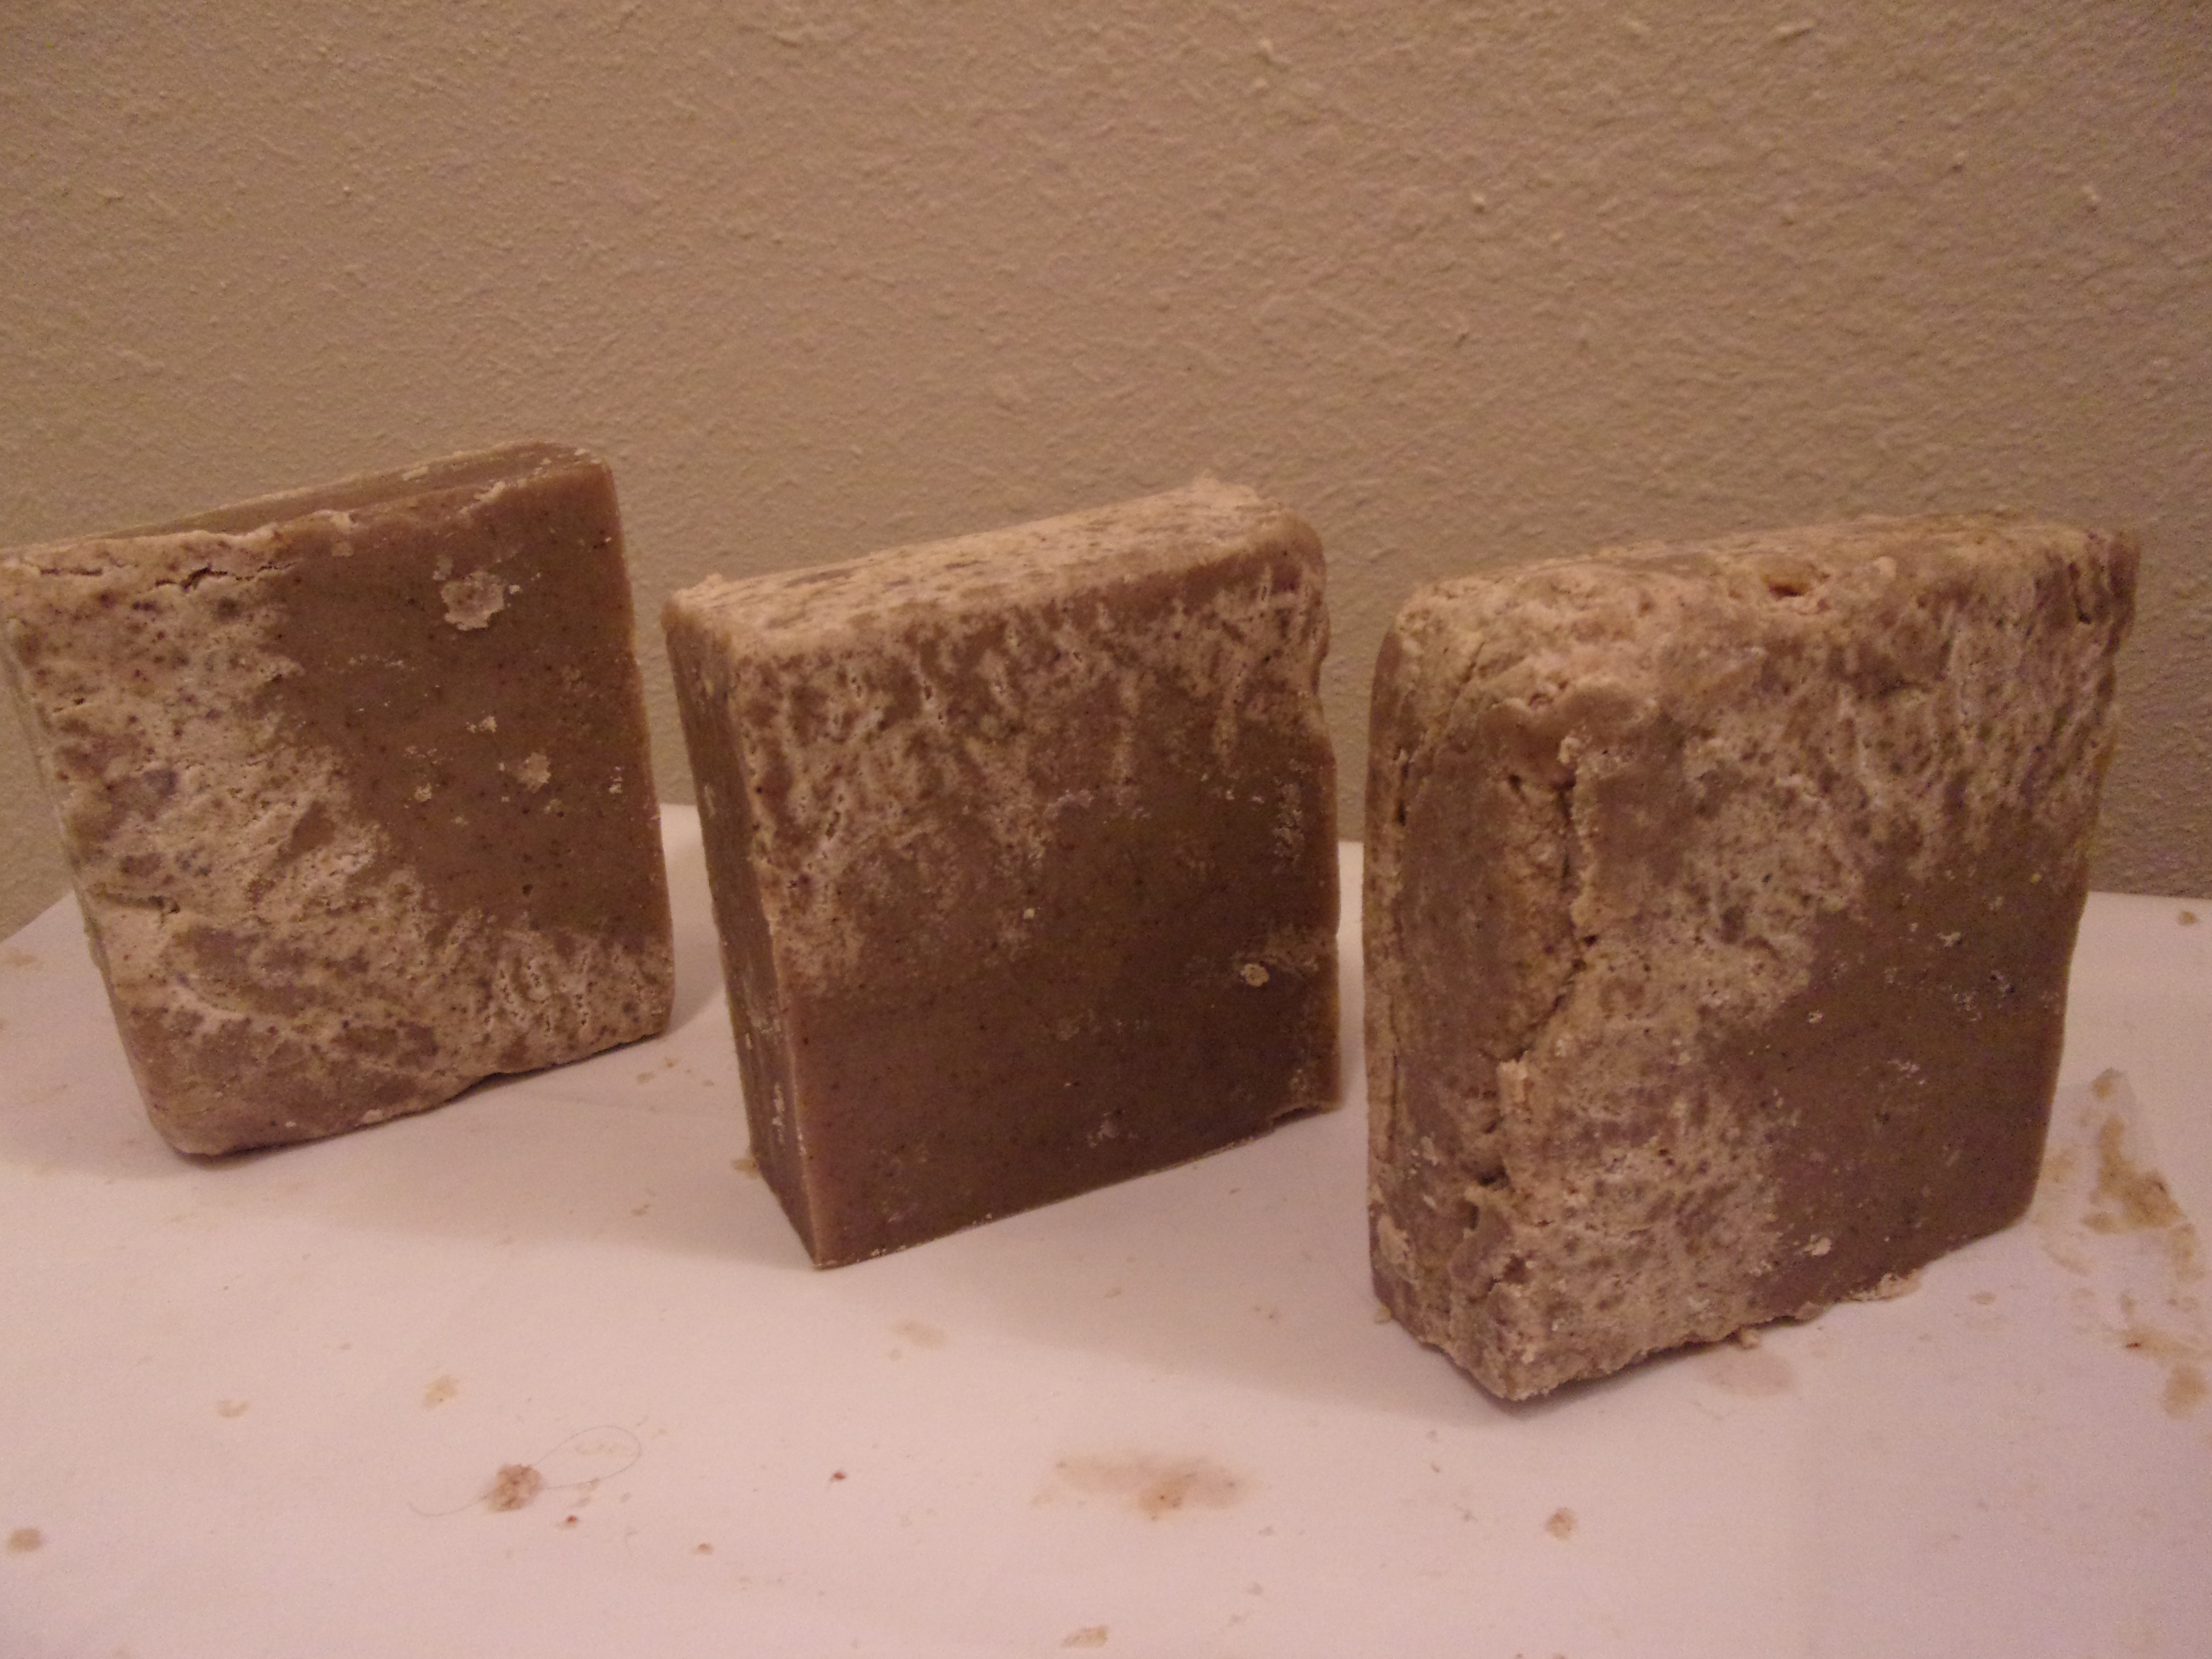 soap bars made with rancid lard